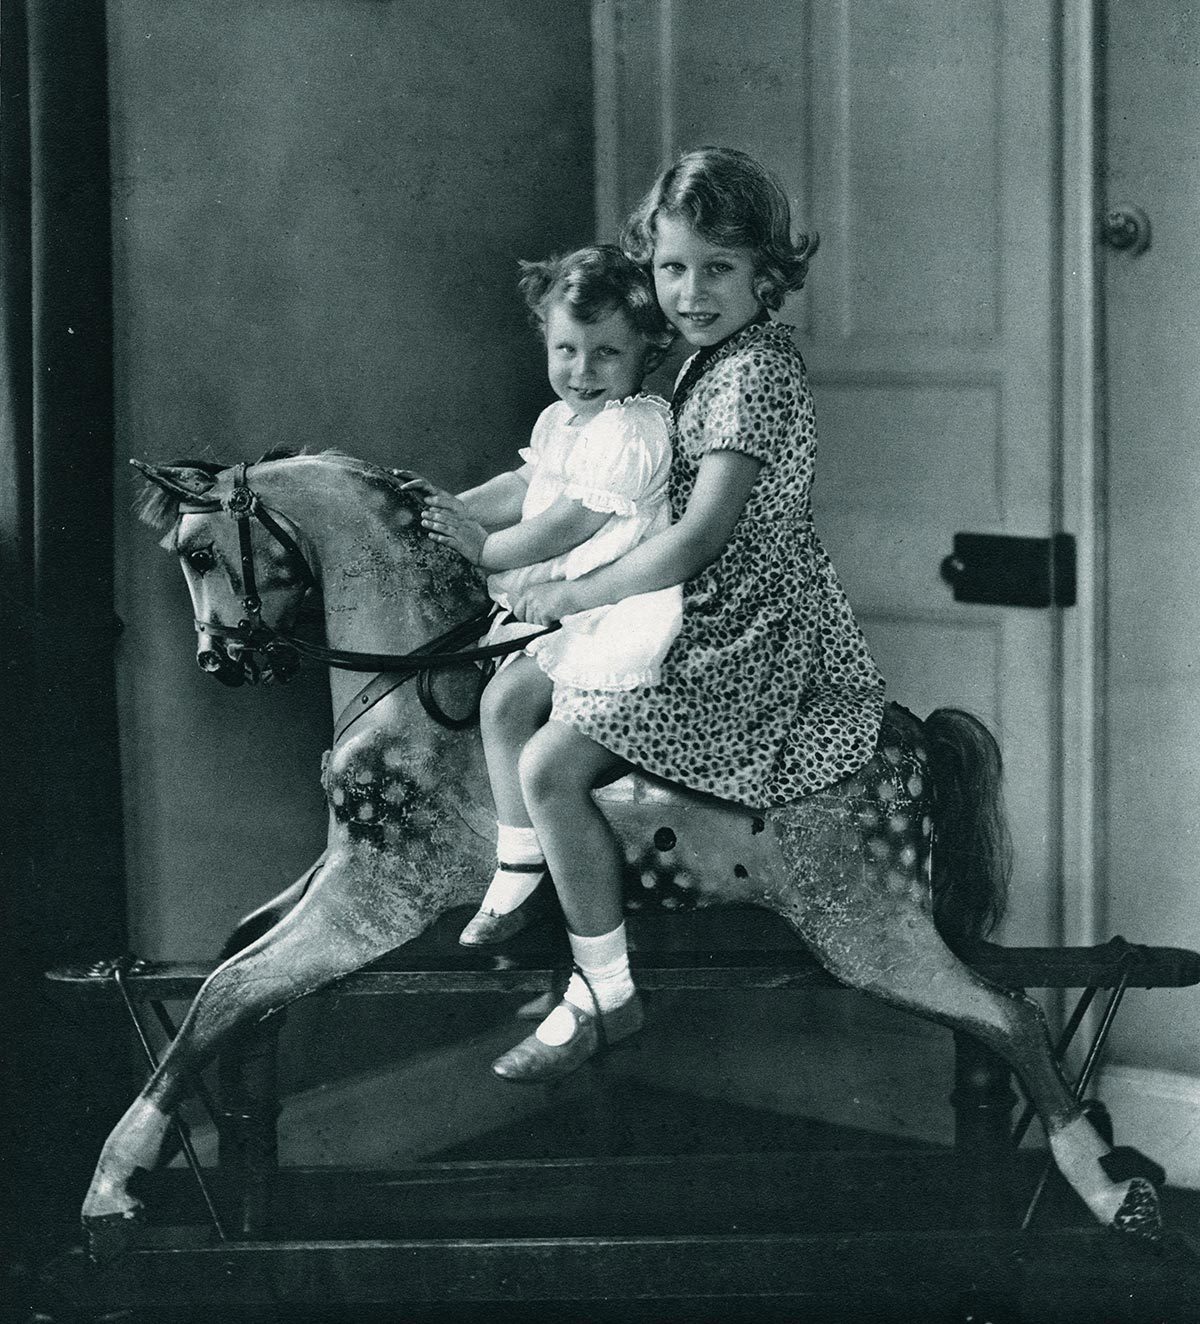 La future reine joue avec sa soeur sur un cheval